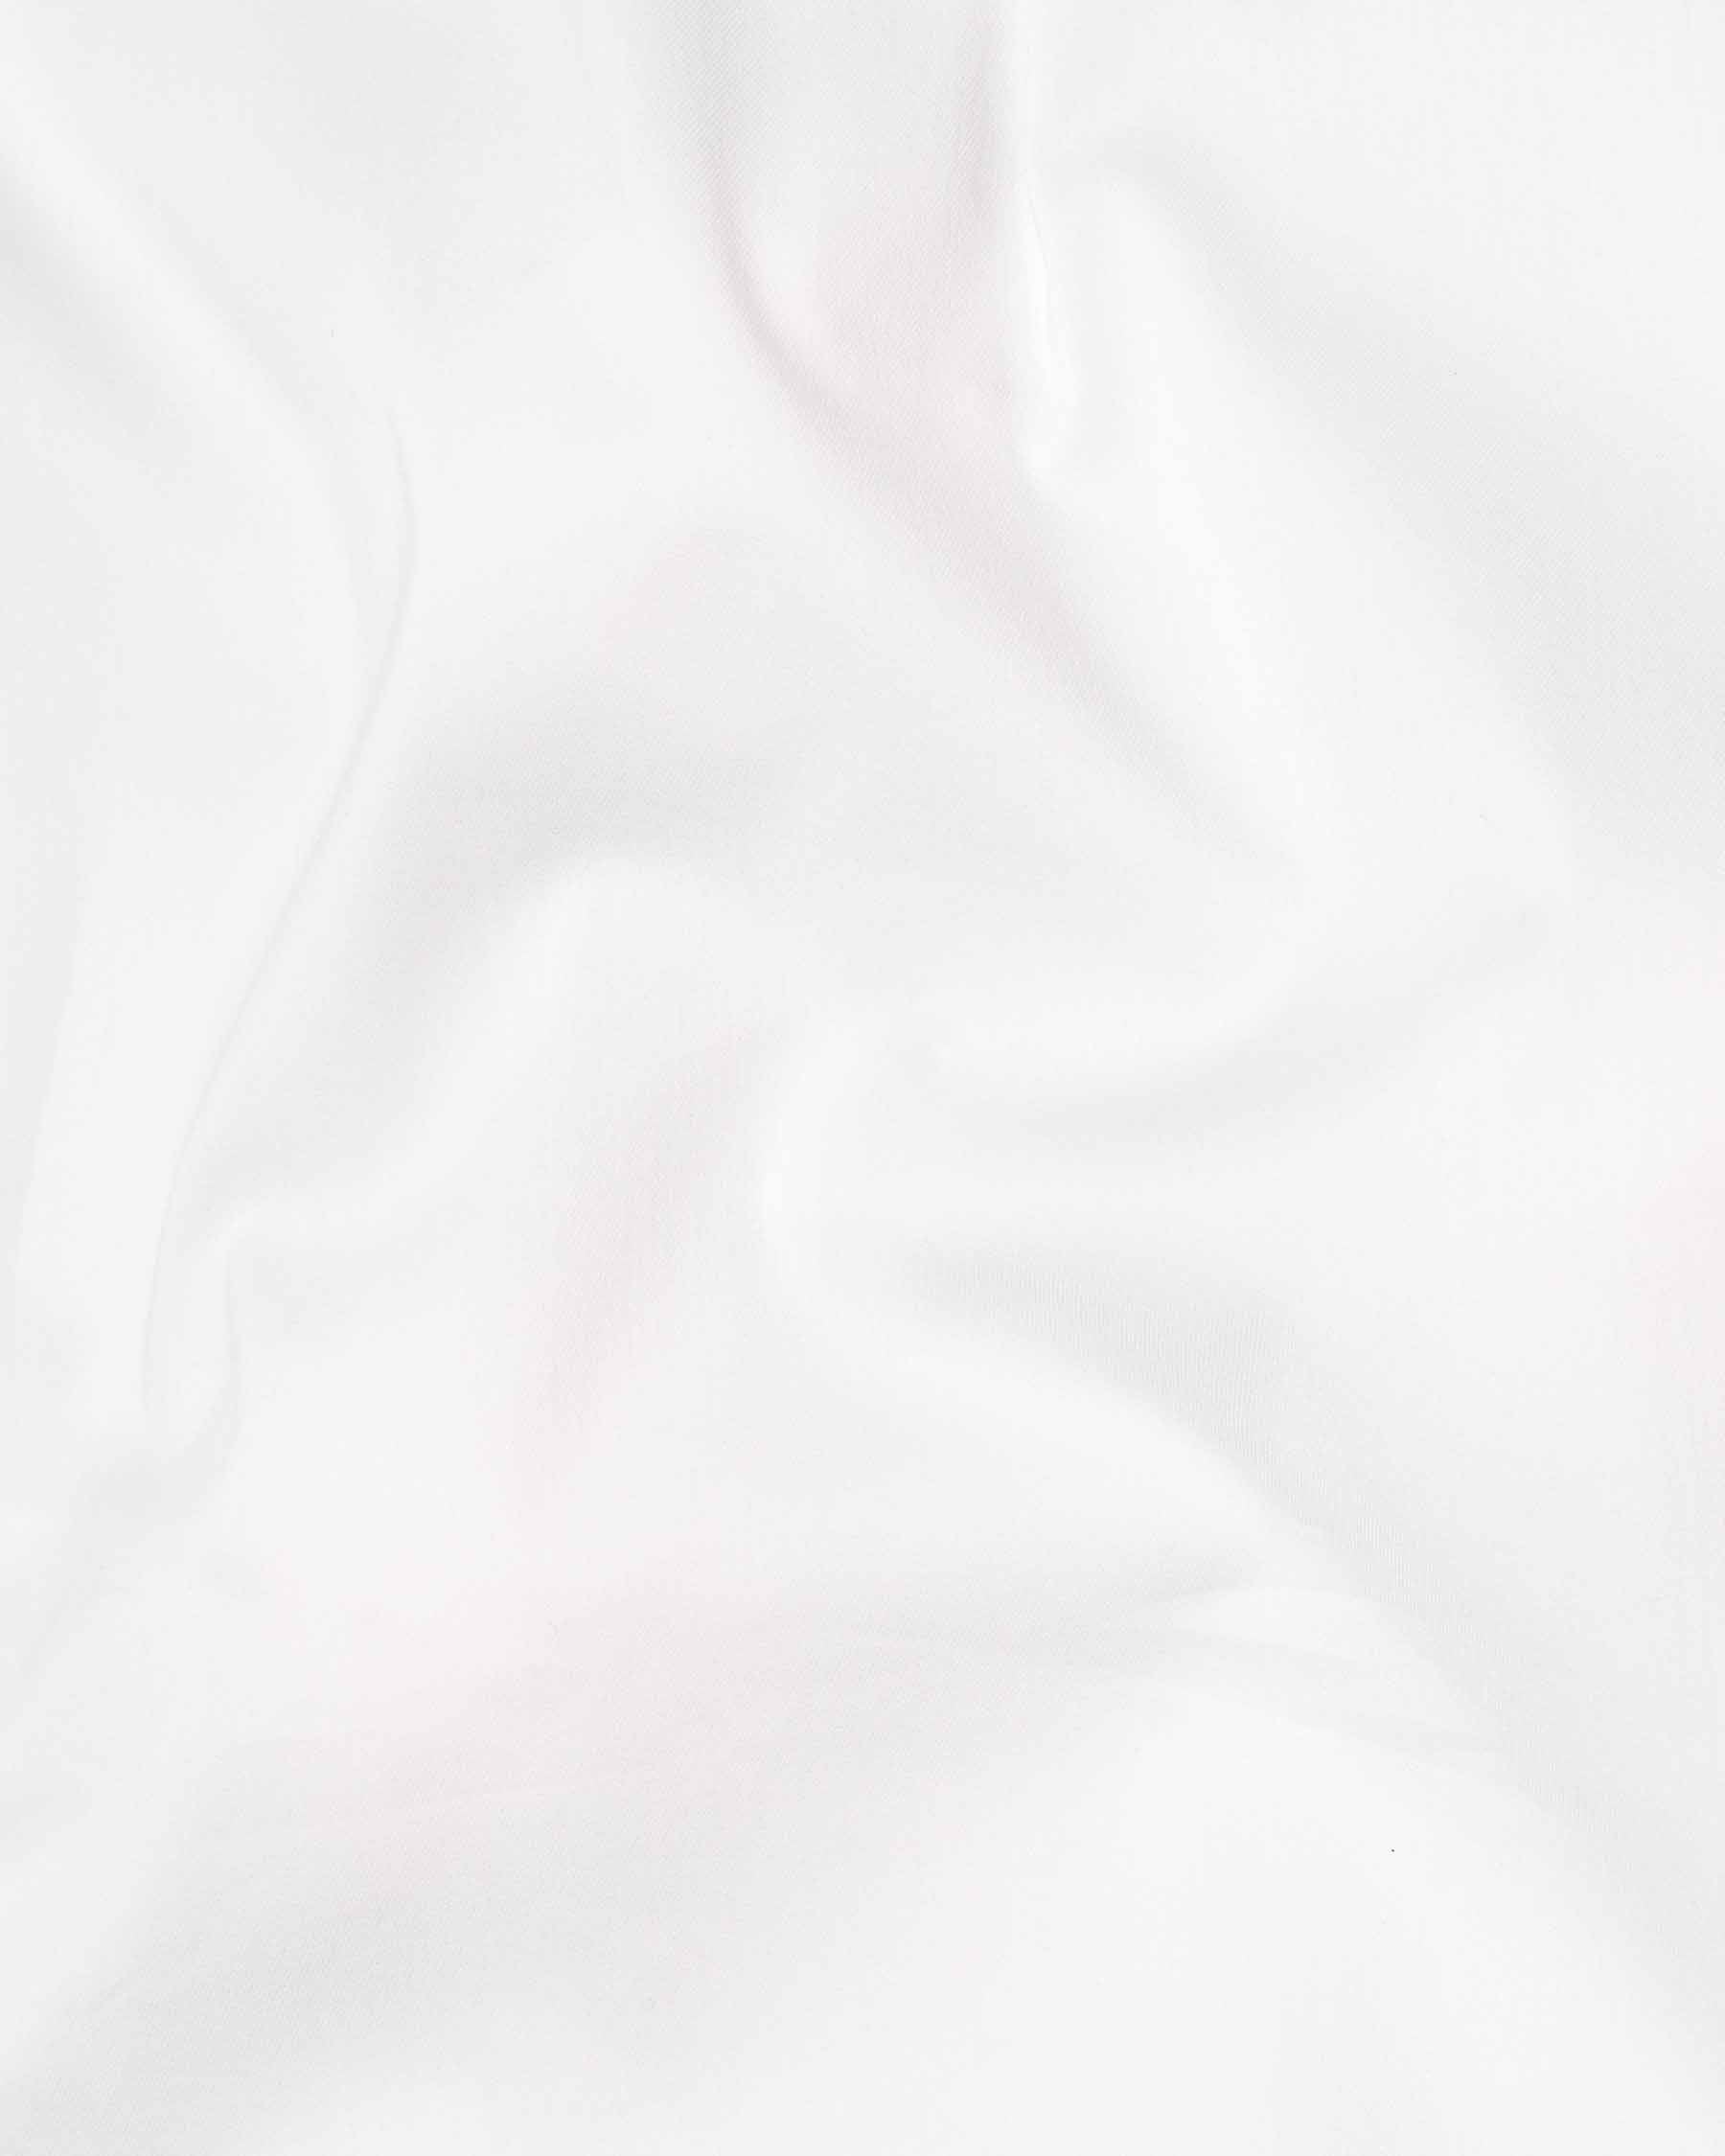 Bright White Premium Cotton Shirt 6264-38, 6264-H-38, 6264-39, 6264-H-39, 6264-40, 6264-H-40, 6264-42, 6264-H-42, 6264-44, 6264-H-44, 6264-46, 6264-H-46, 6264-48, 6264-H-48, 6264-50, 6264-H-50, 6264-52, 6264-H-52